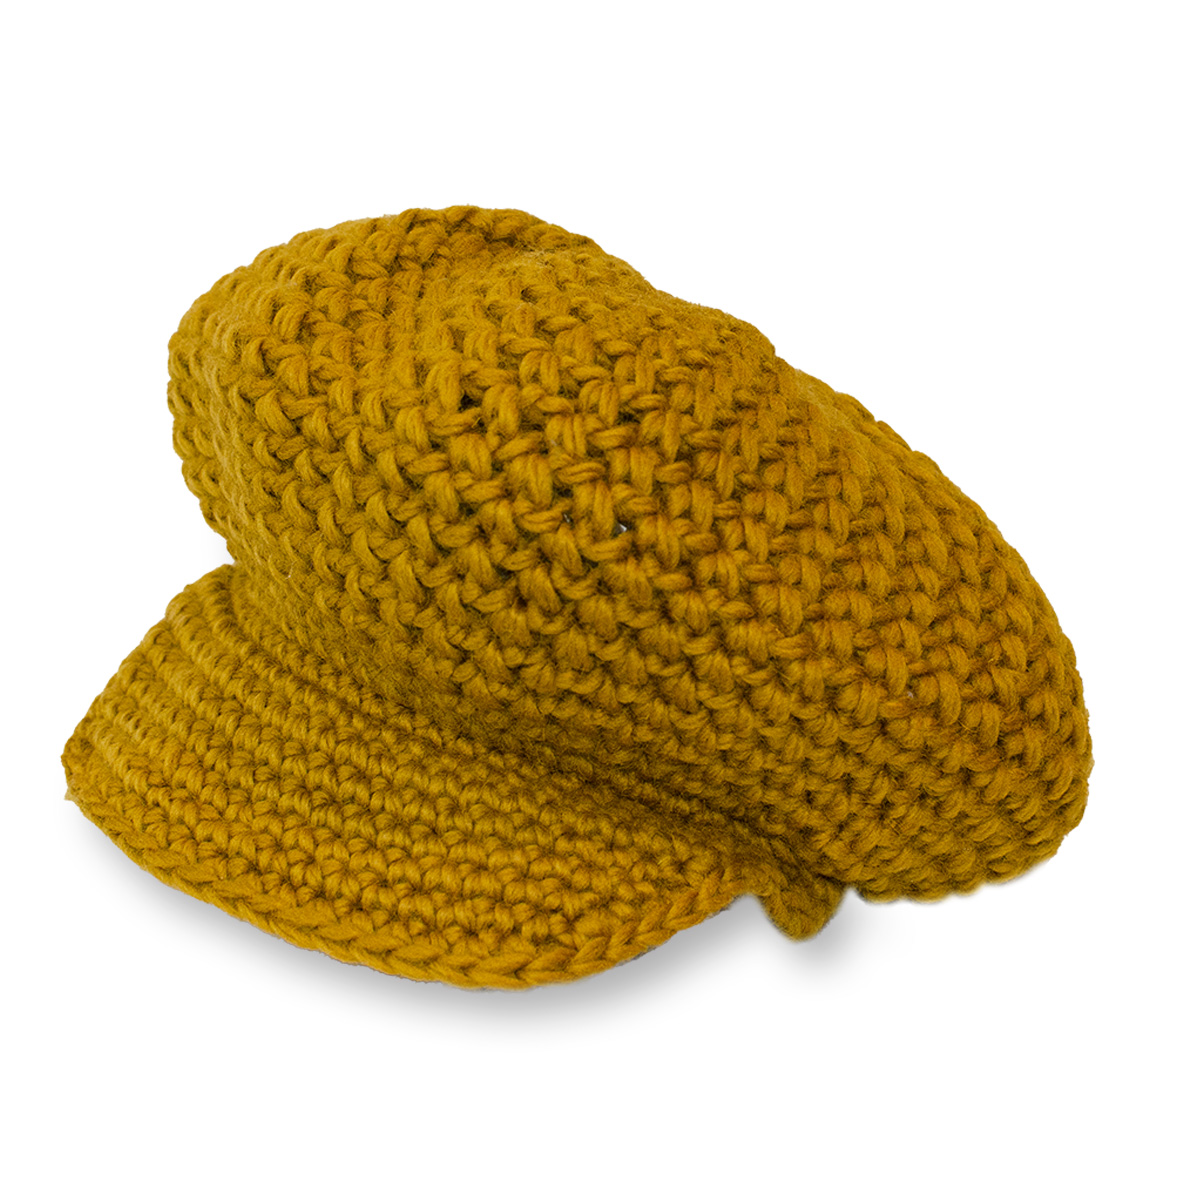 Mr. D knit cap